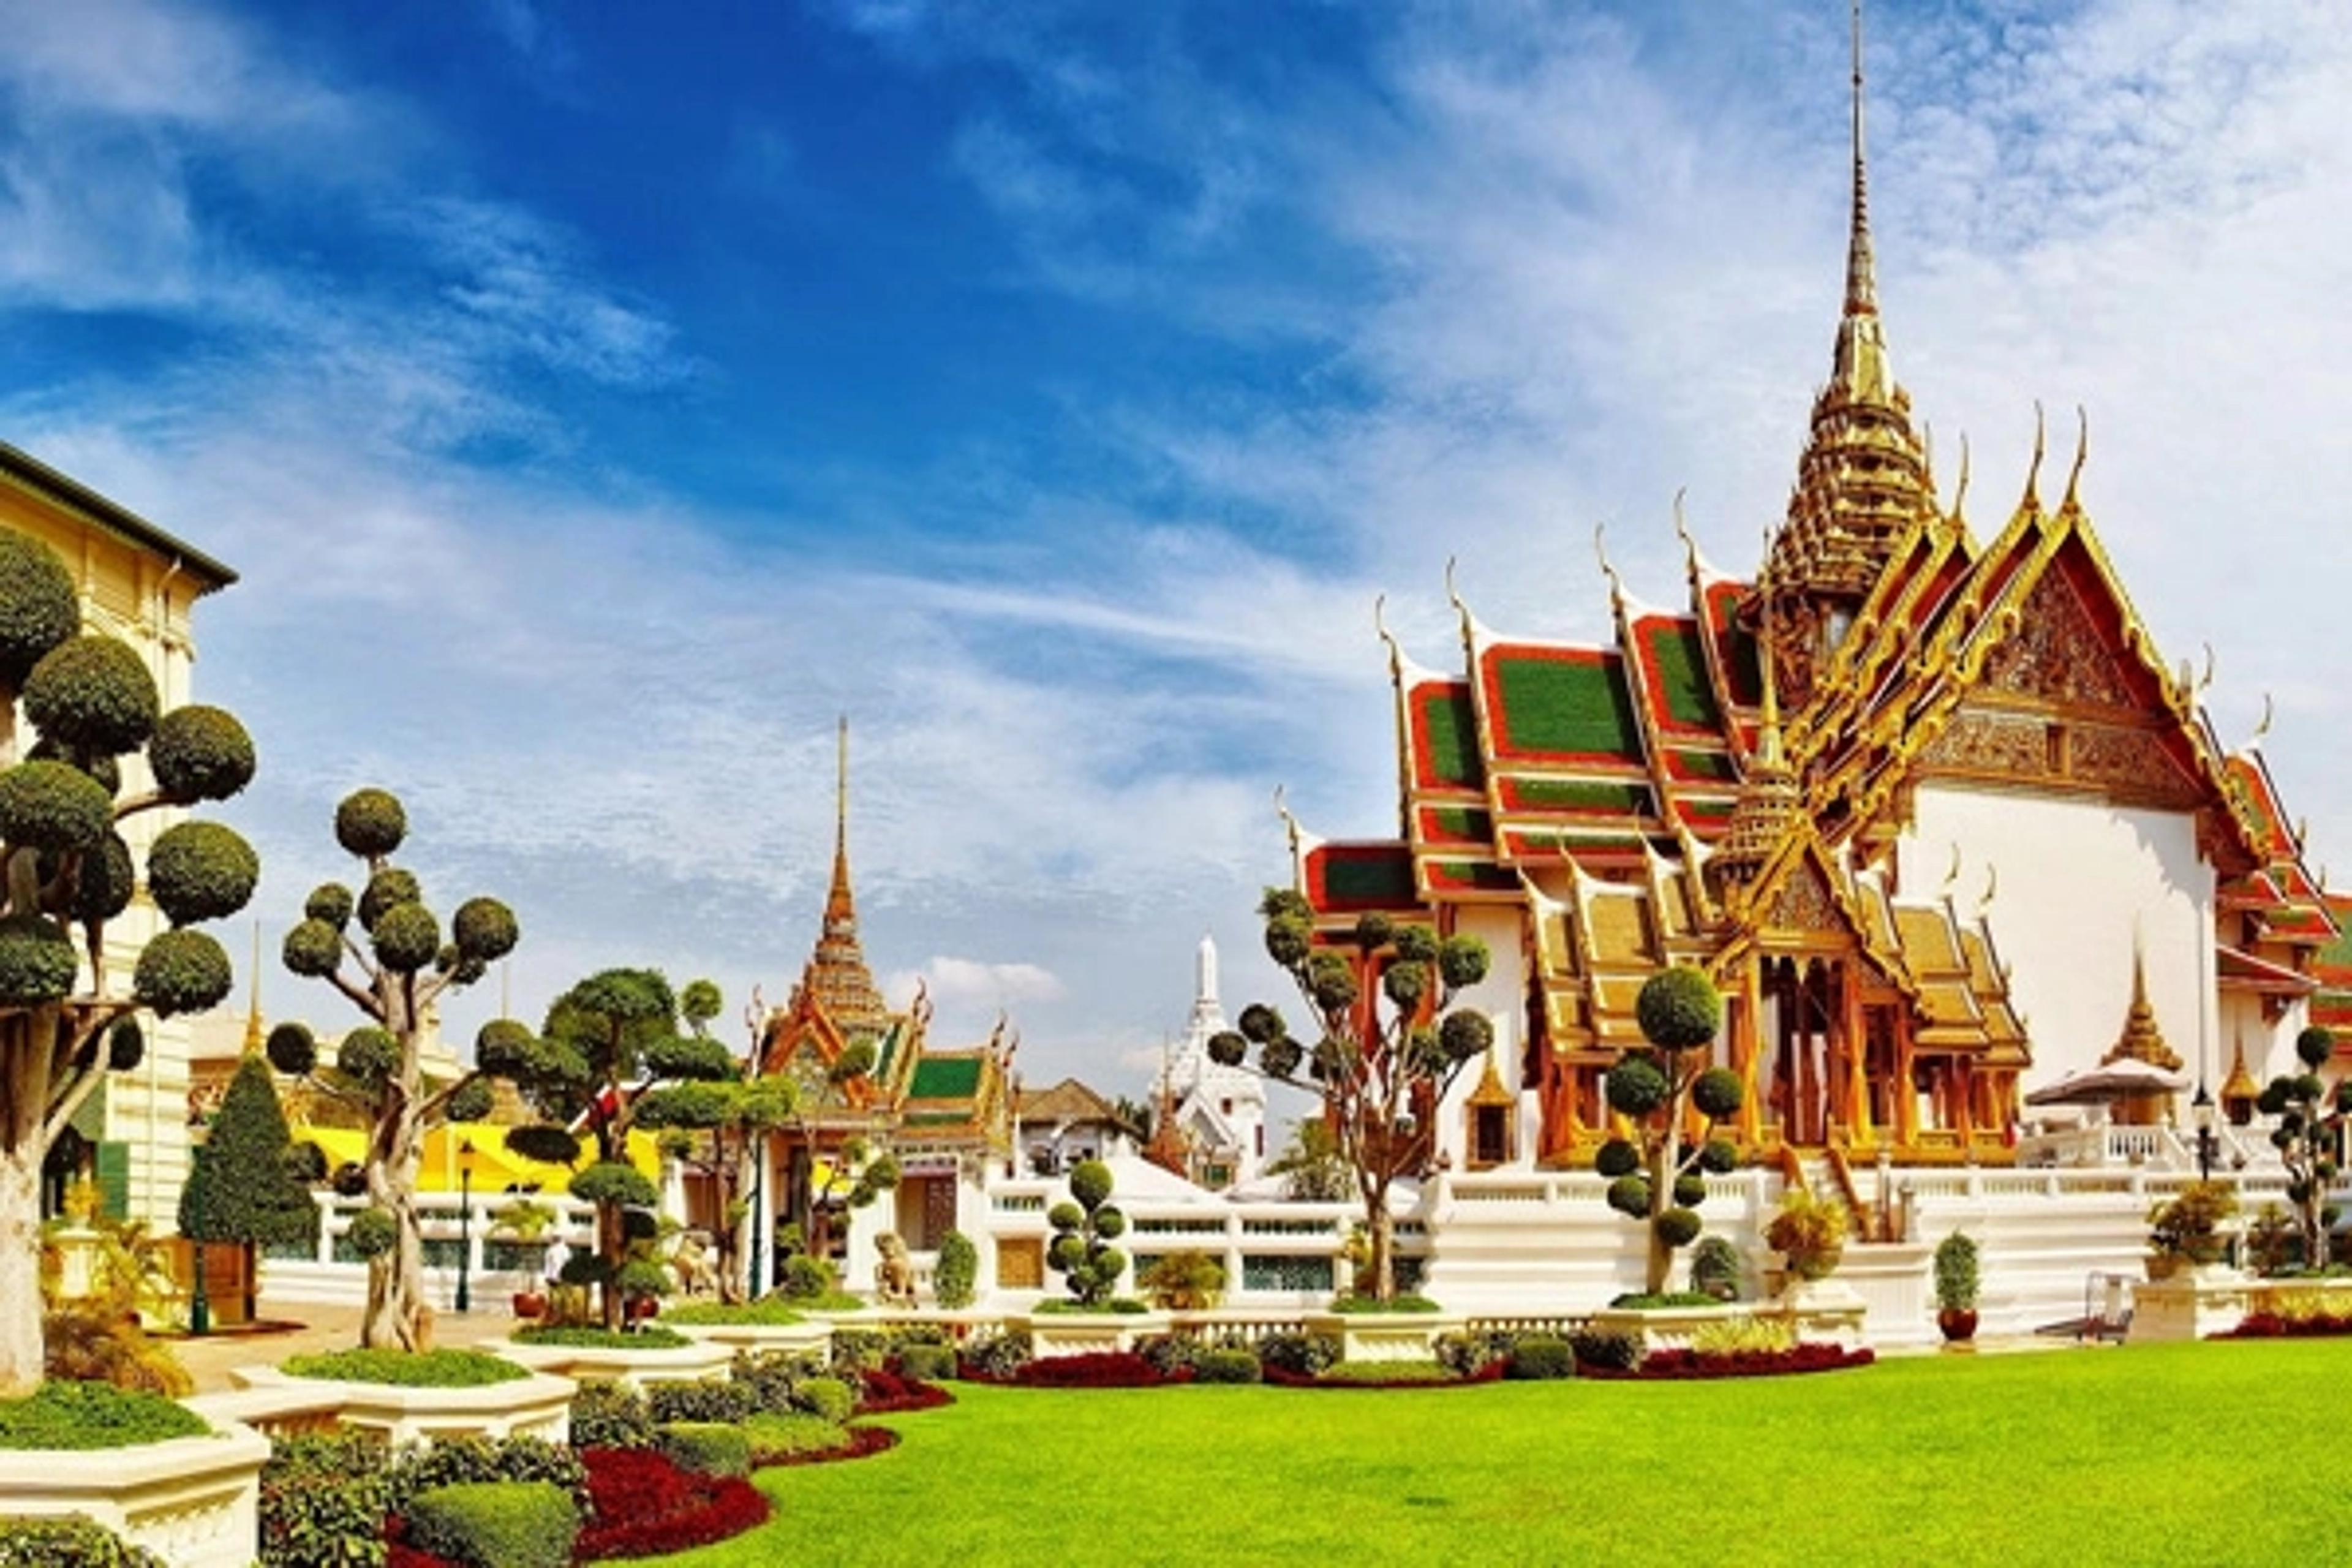 Jim Thompson House Museum là một điểm đến văn hóa và lịch sử nổi tiếng tại Bangkok, Thái Lan